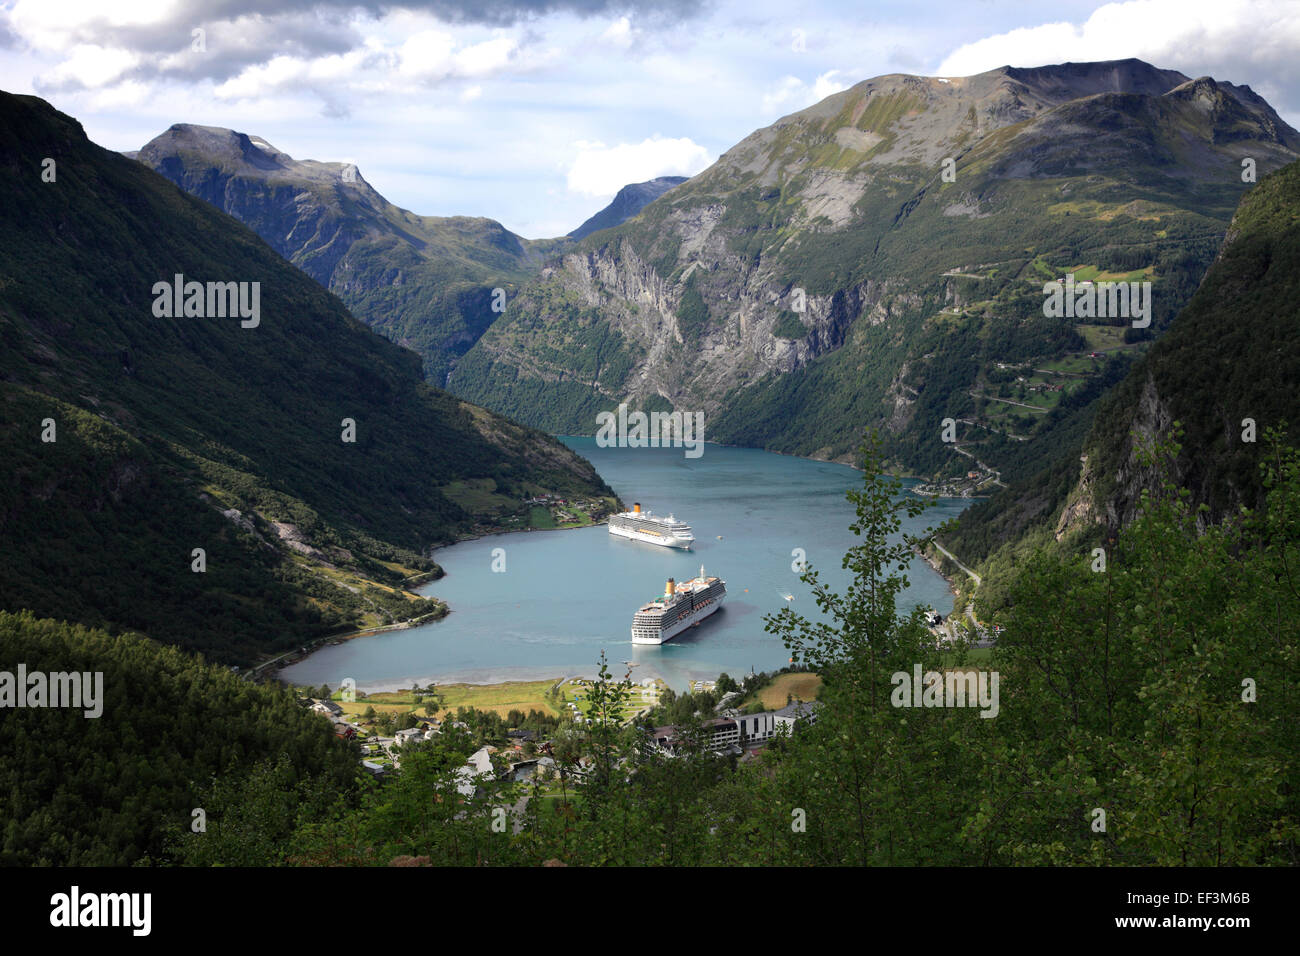 Cruise ships in Geirangerfjord, Geiranger town, UNESCO World Heritage Site, Sunnmøre region, Møre og Romsdal county, Norway Stock Photo